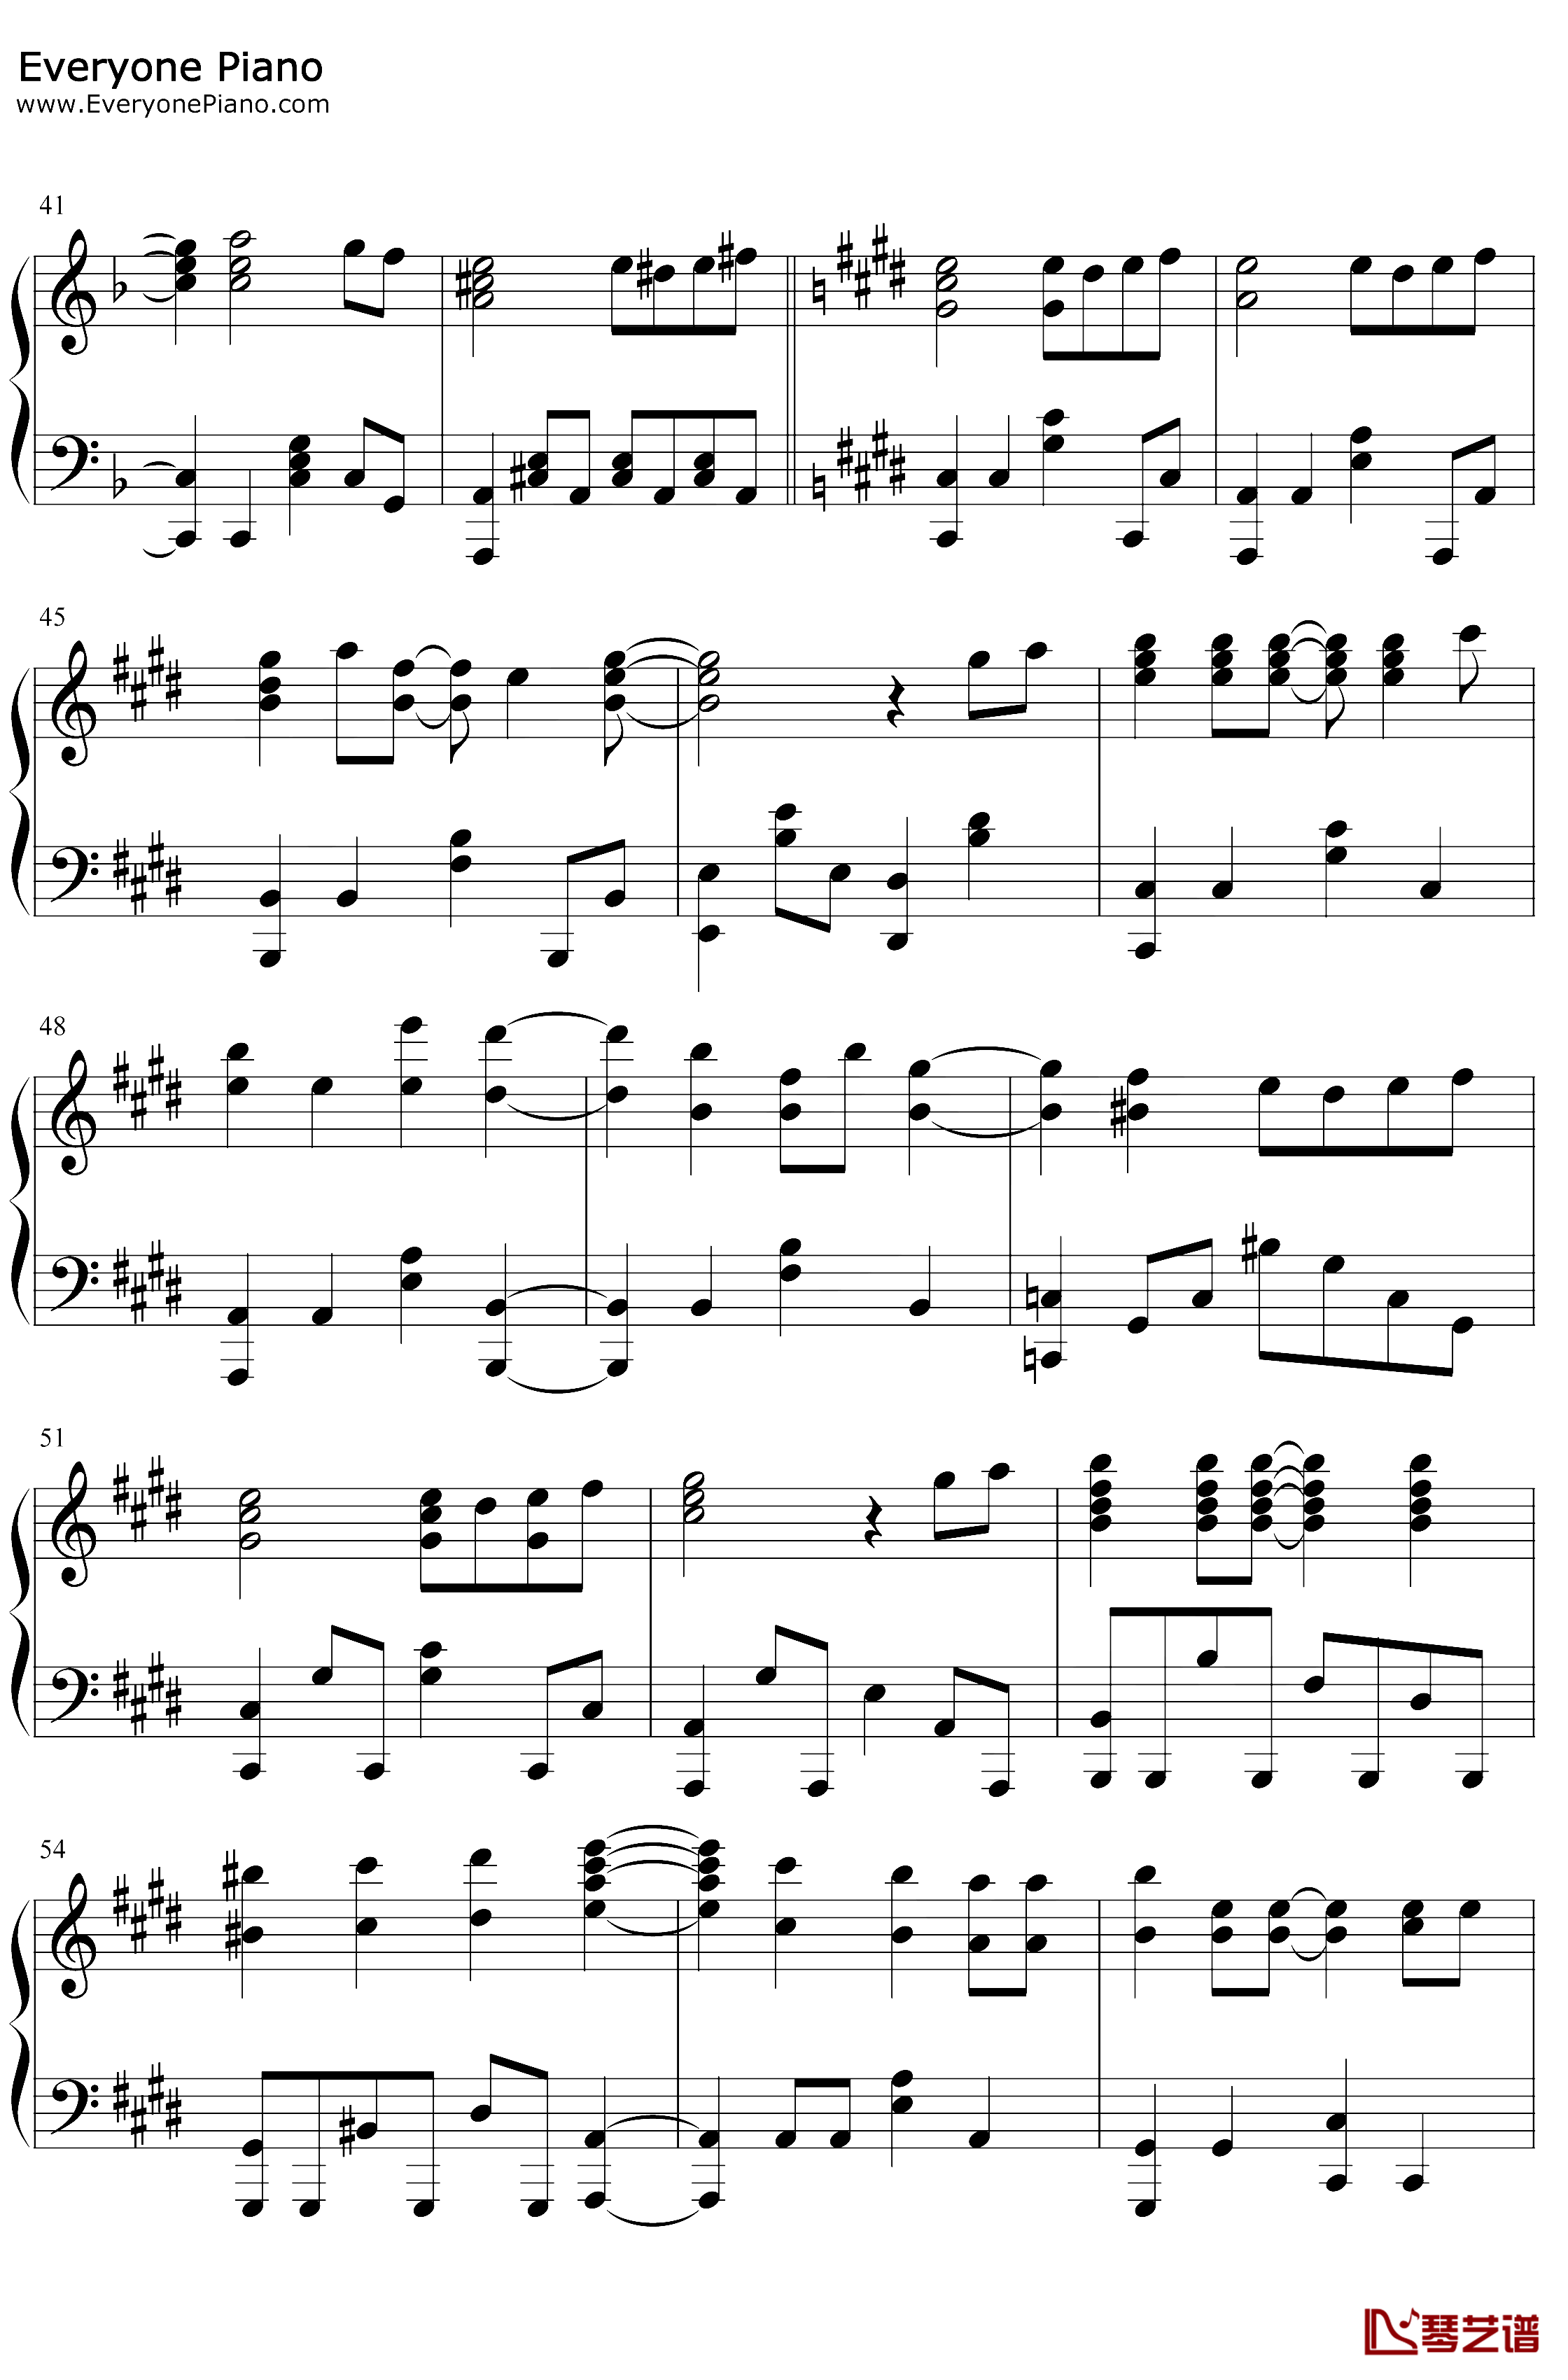 炎钢琴谱-LiSA-鬼灭之刃无限列车篇主题曲3